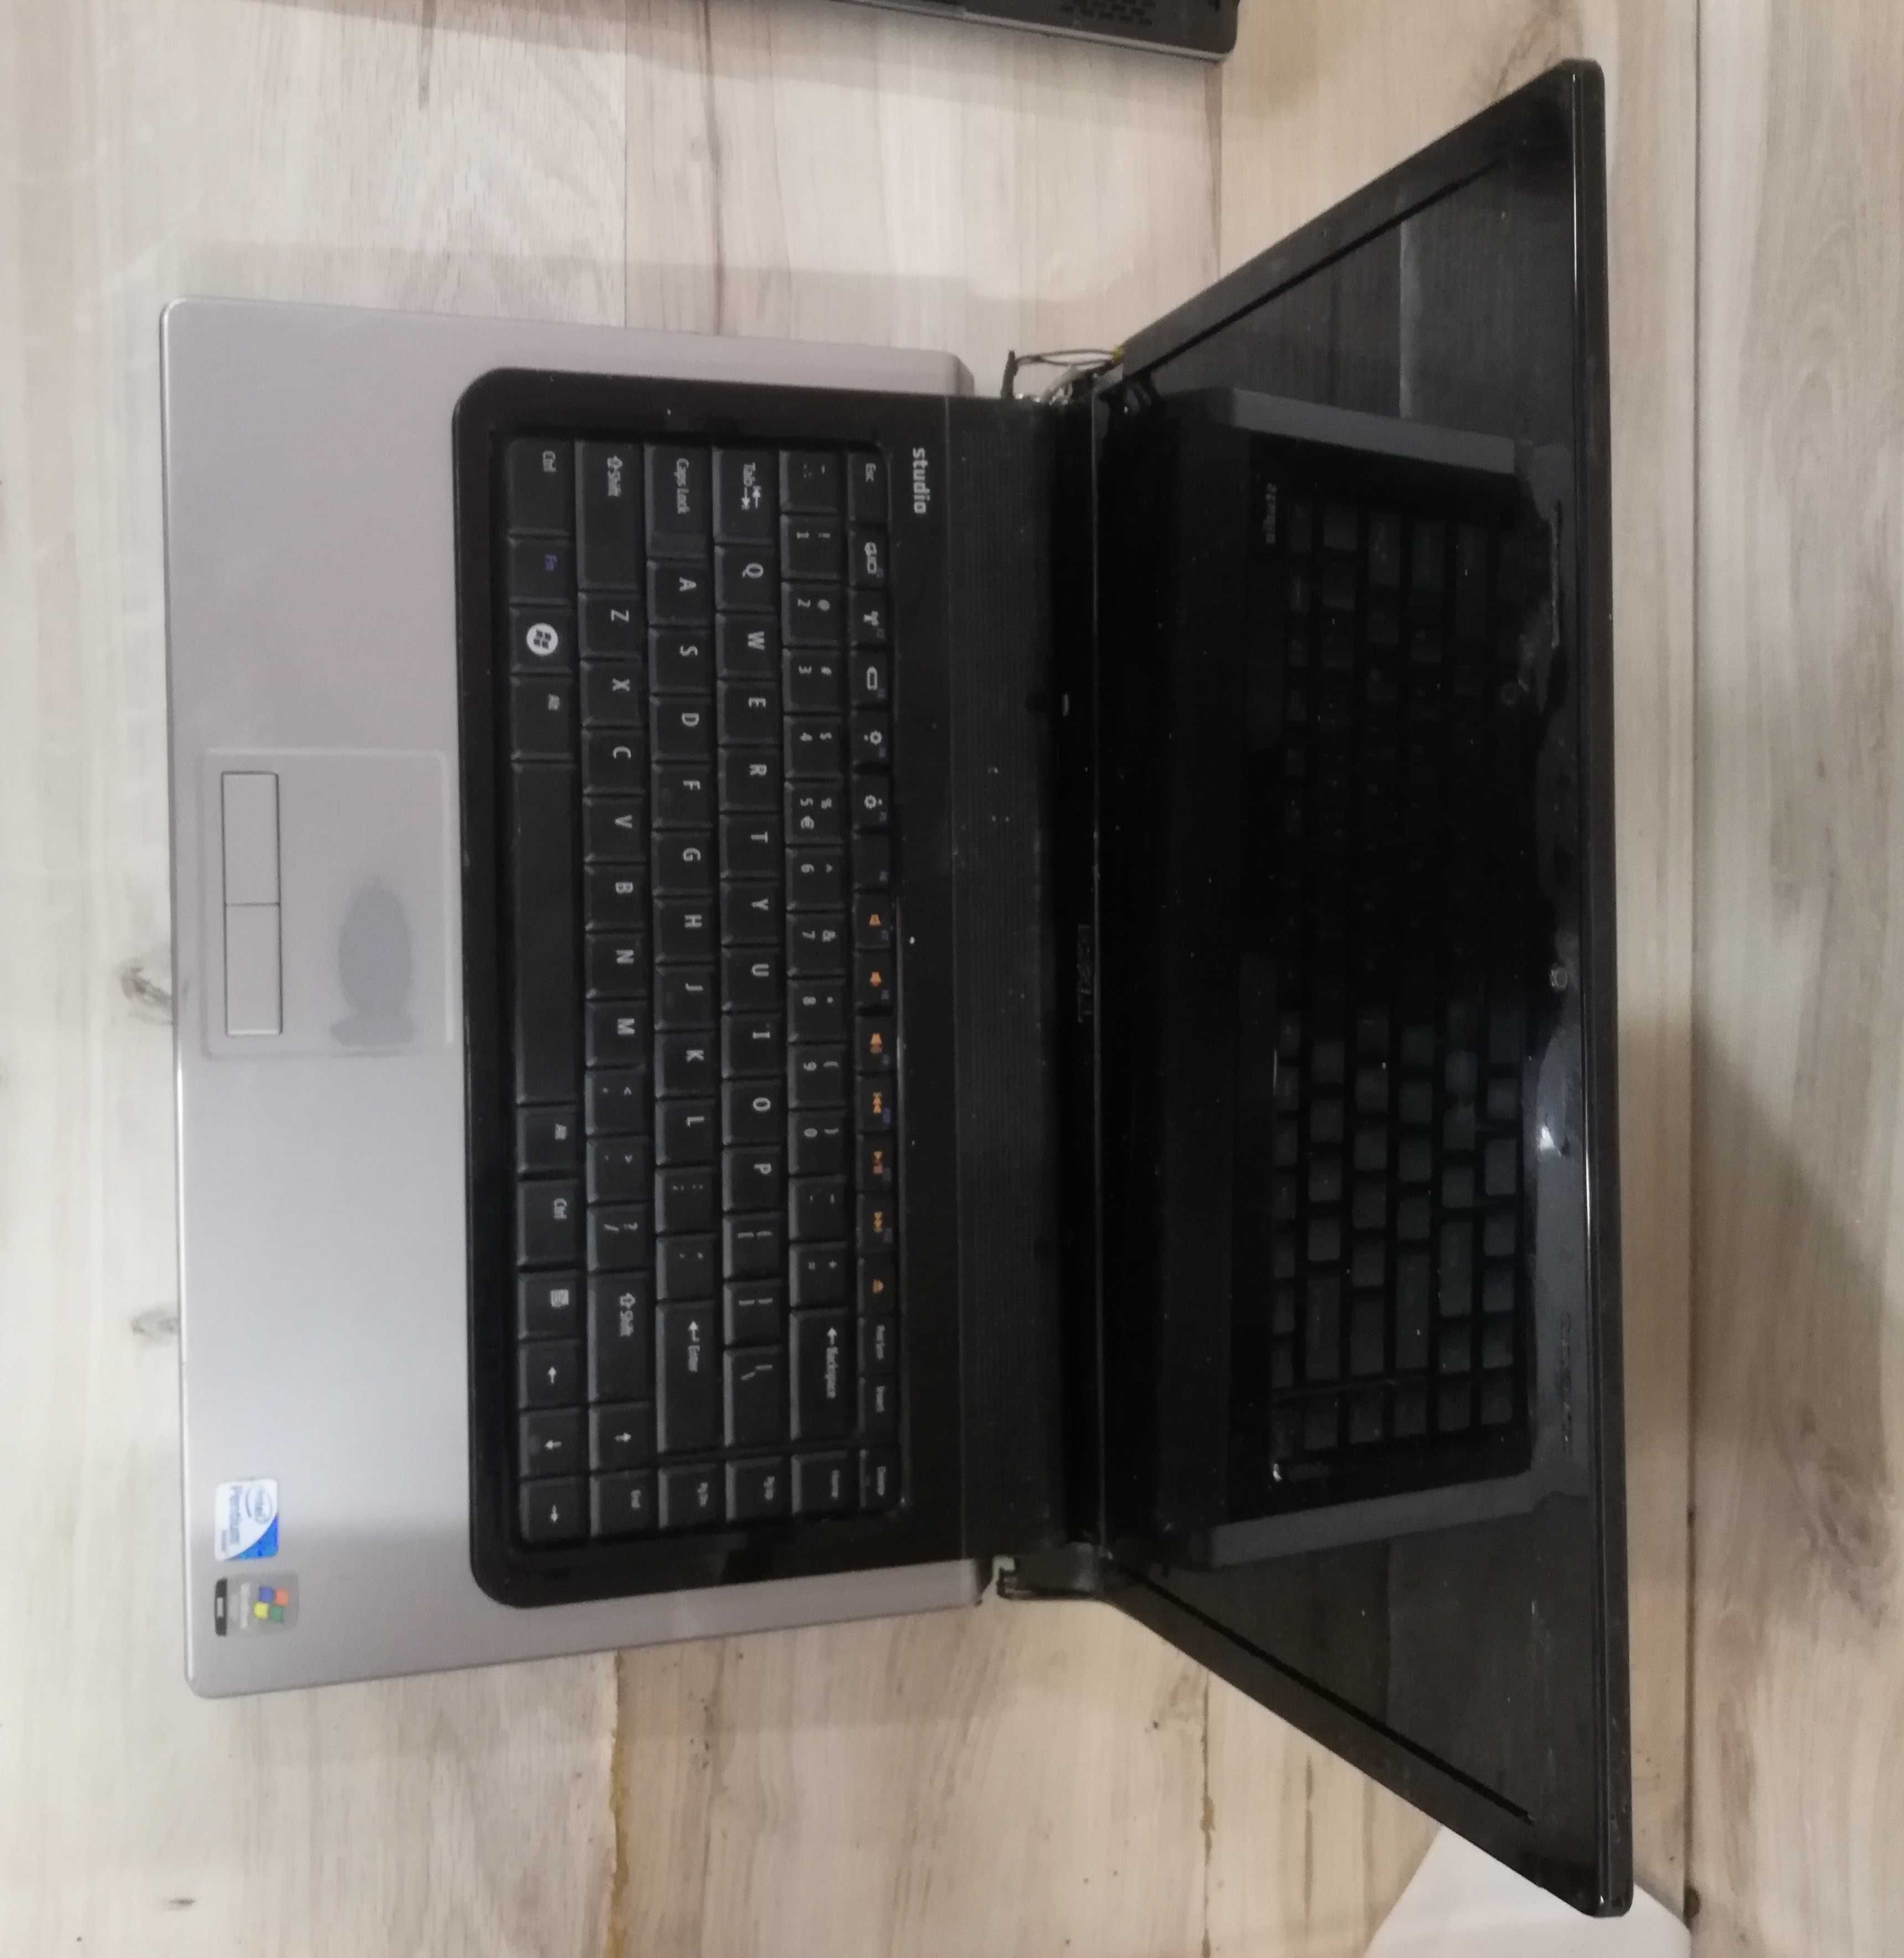 Laptop Dell Studio 1555